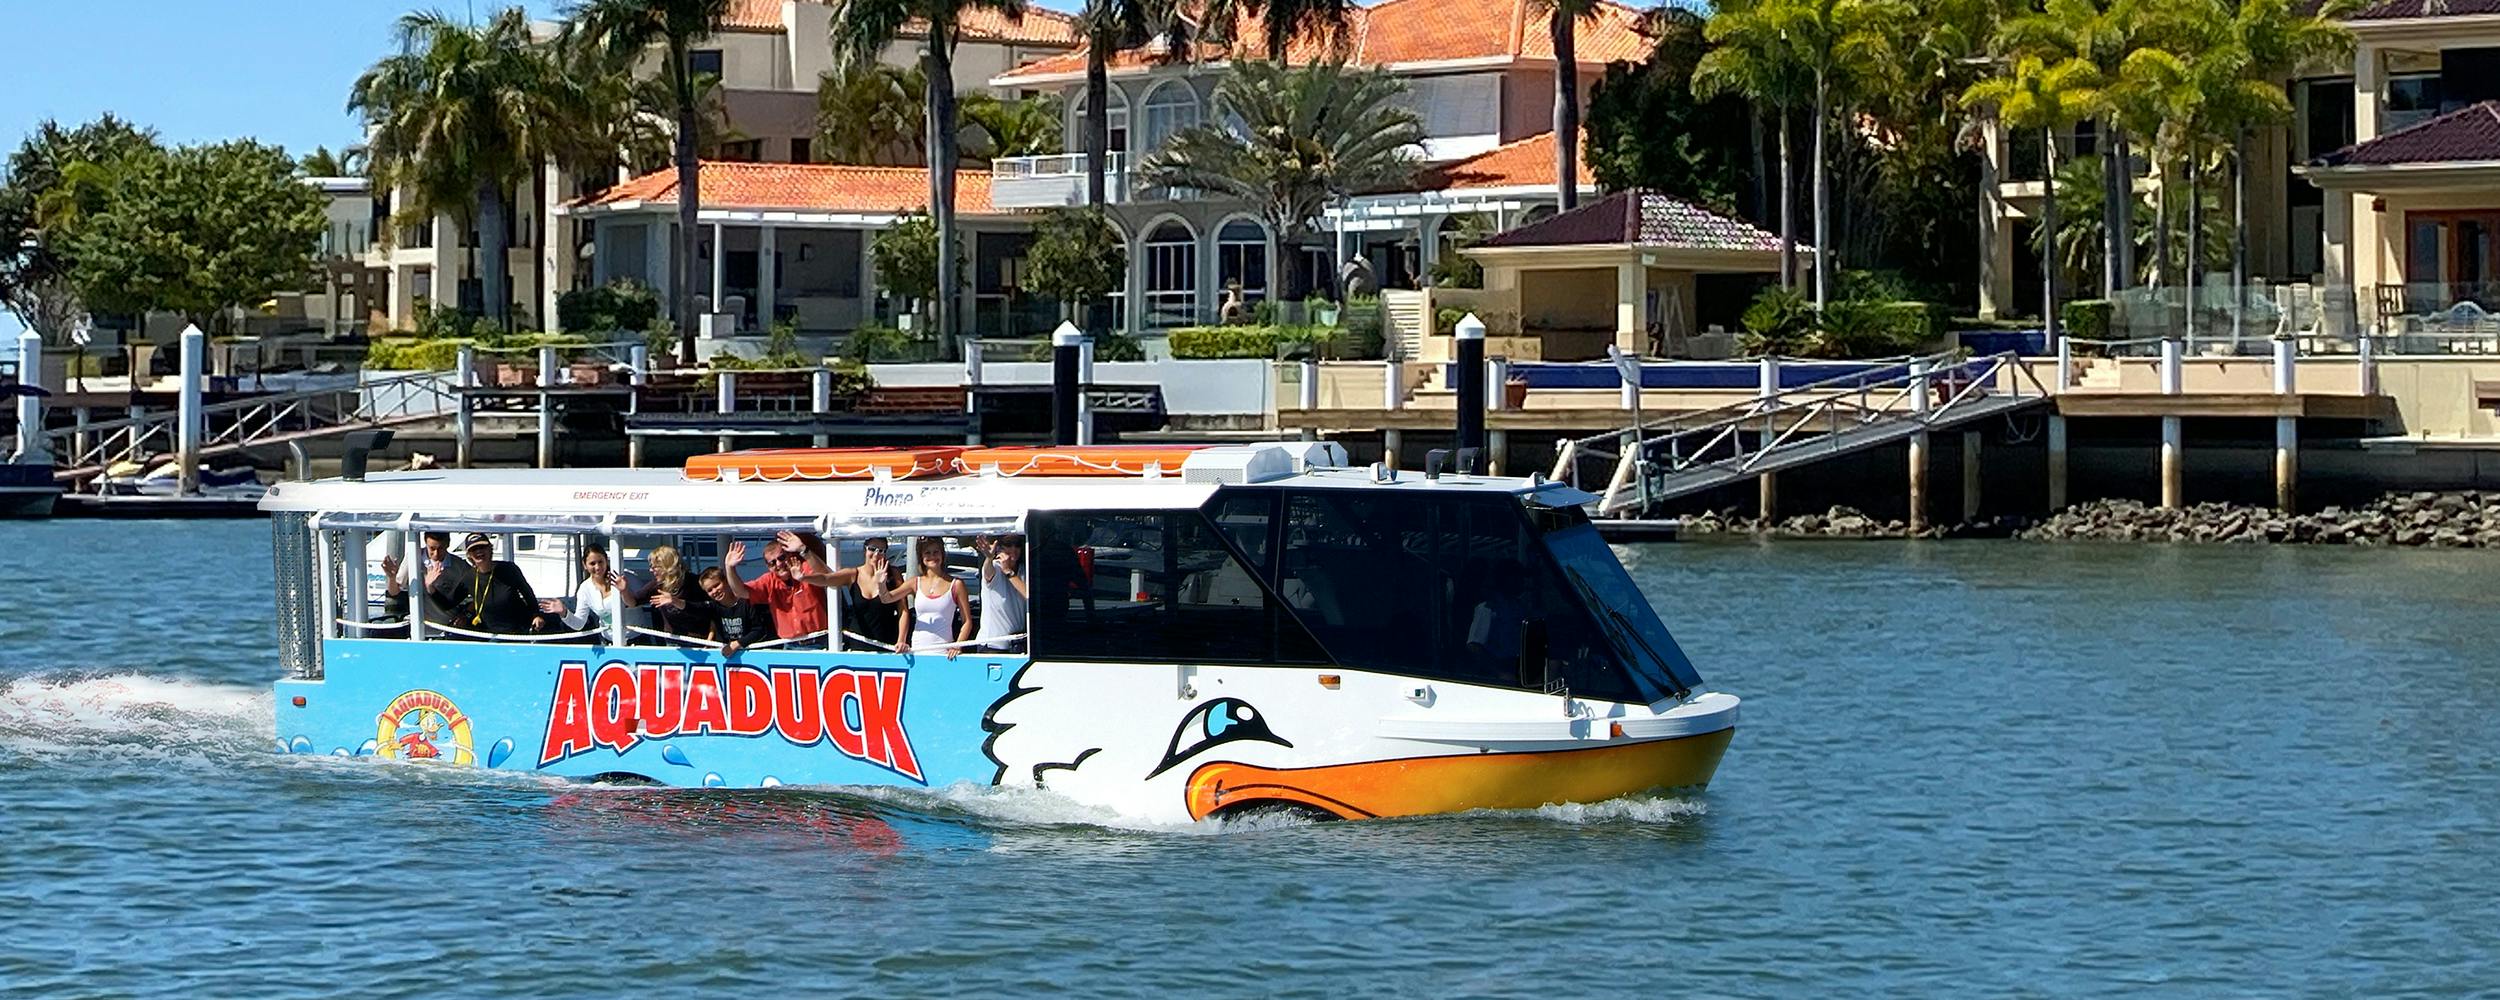 Aquaduck Sunshine Coast 1-godzinna wycieczka po mieście i rejs po rzece